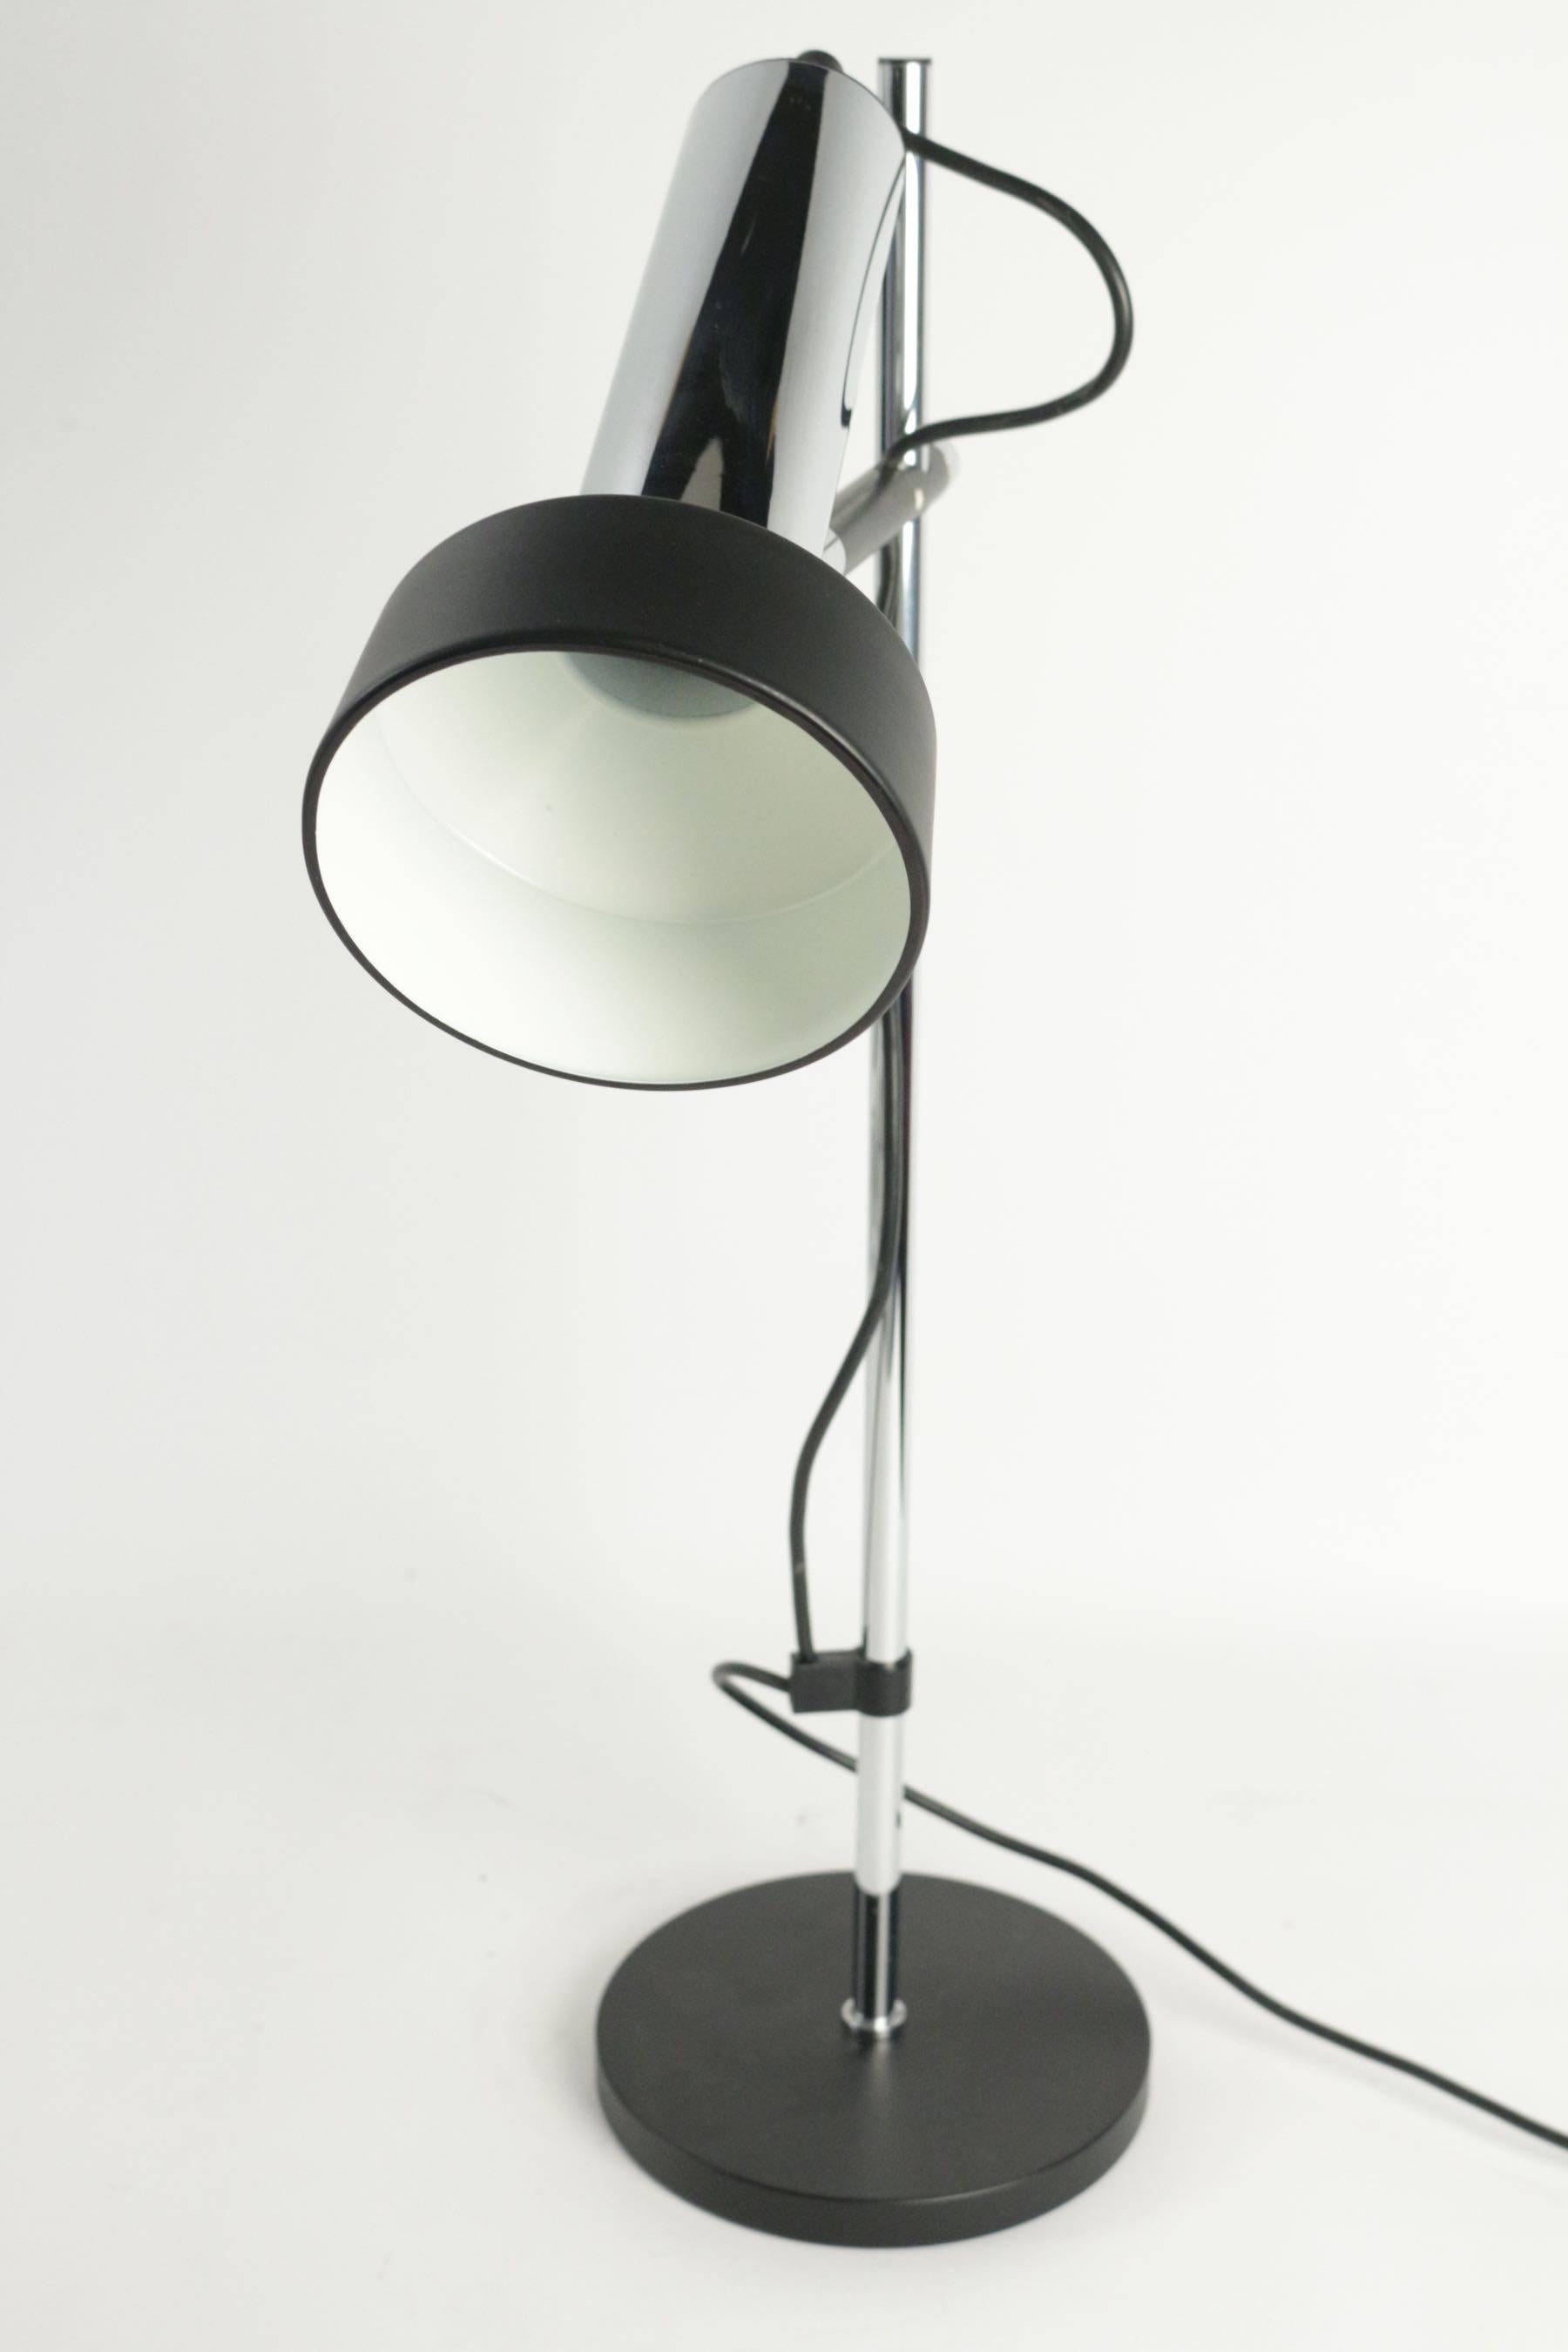 Steel 1950 Adjustable Desk Lamp by Arlus